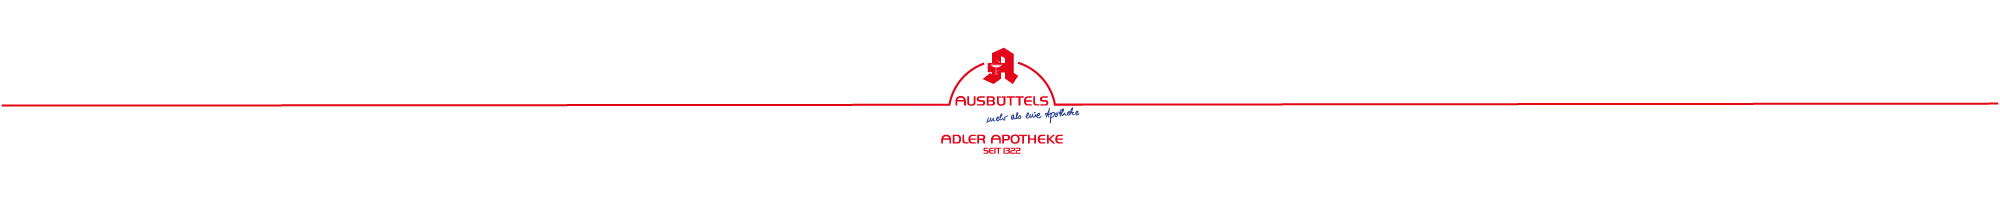 Adler Apotheke - Ausbüttels Apotheken